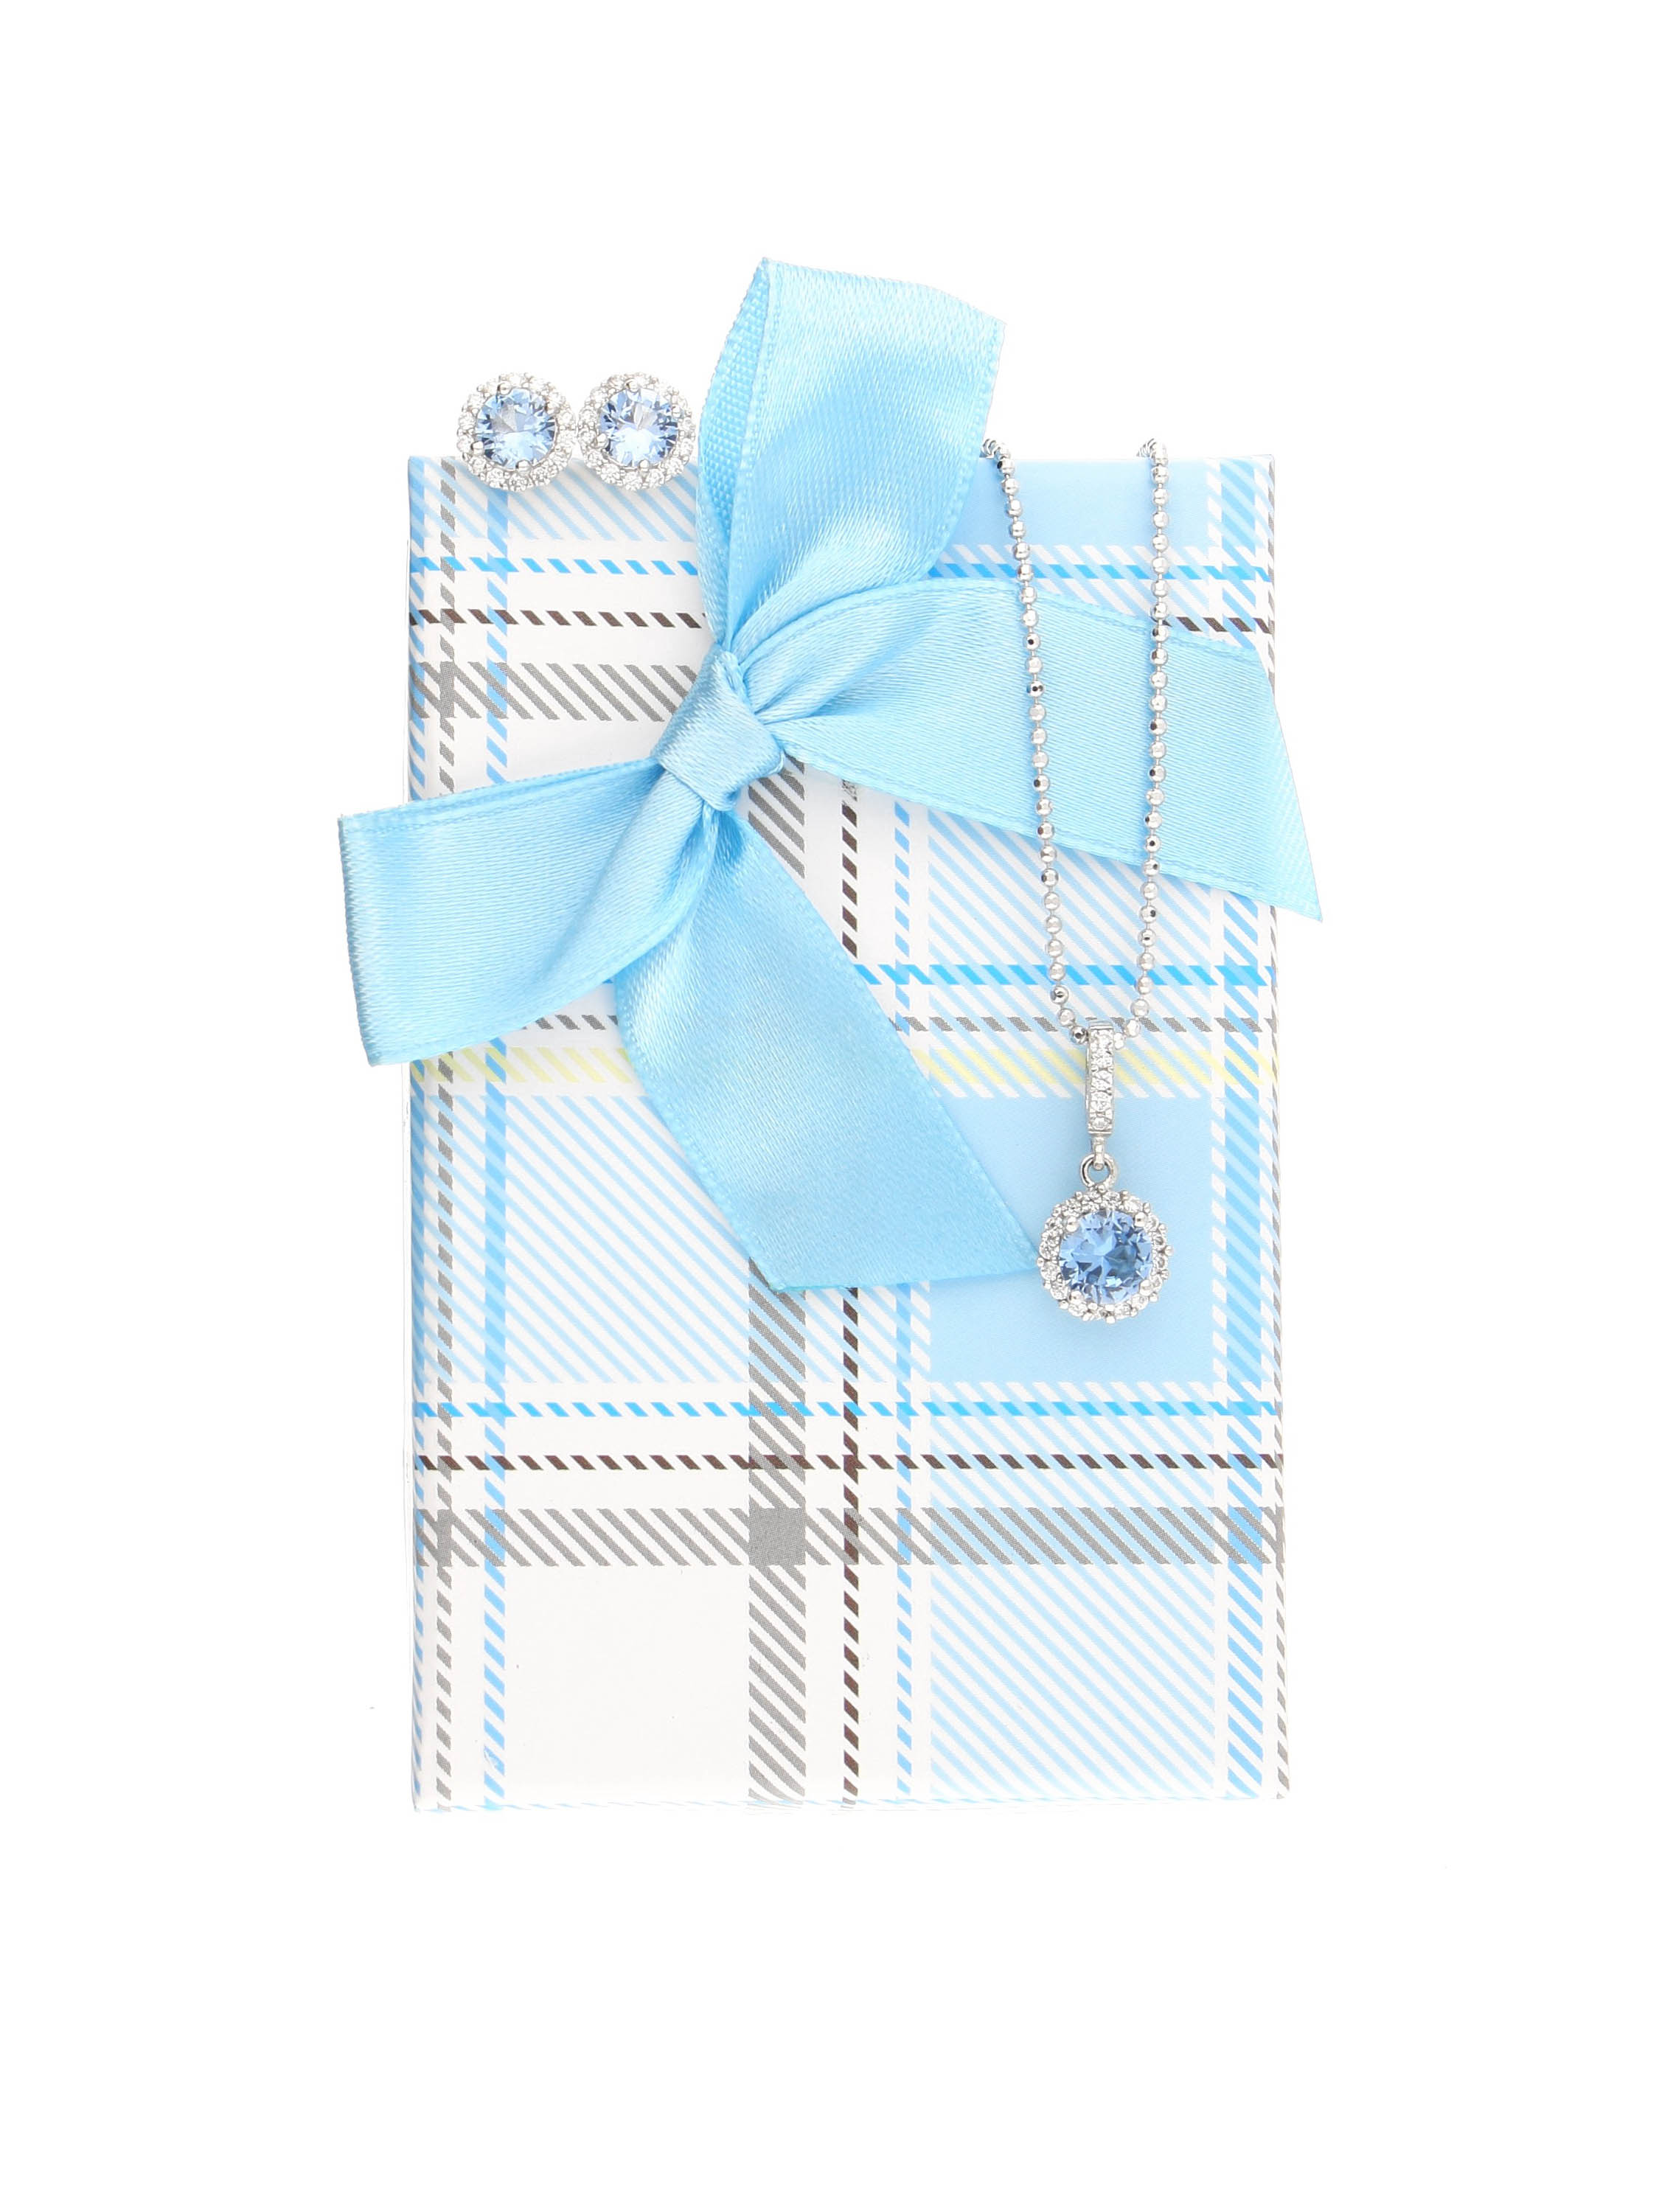 Karierte Geschenkschachtel mit schöner Satinschleife für das hellblaue Amazone Set | Verpackung